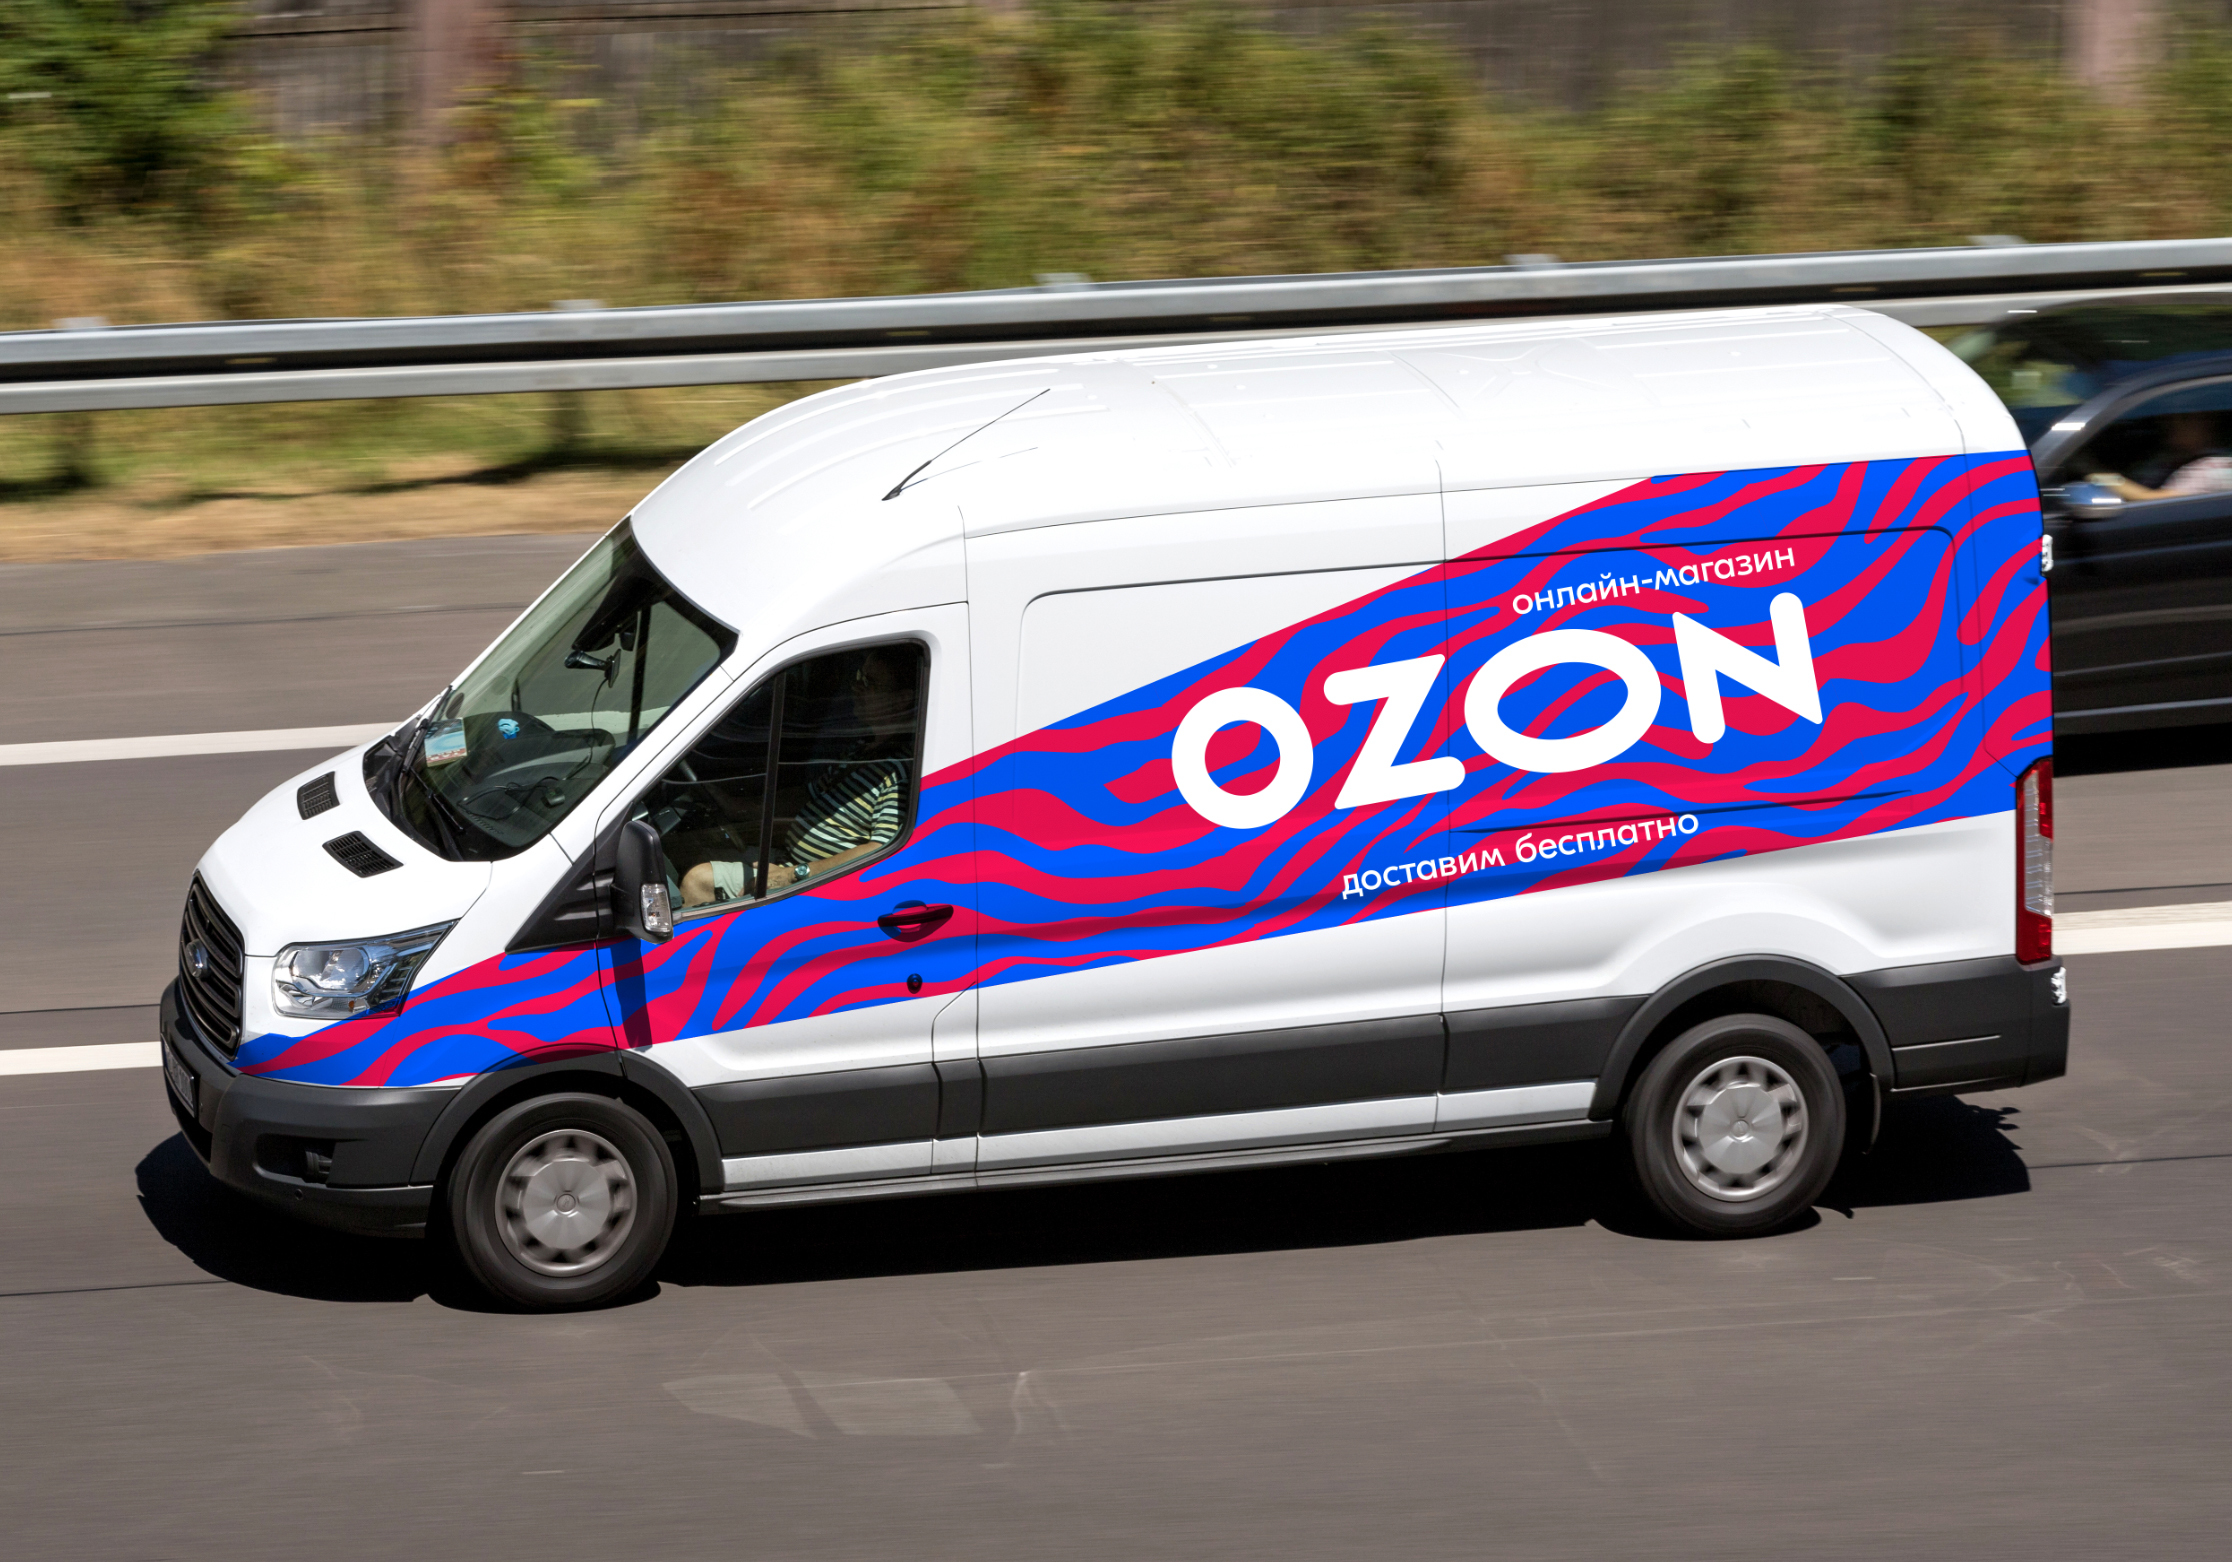 Авто на озоне цена. OZON Express. Машины фирмы озона. Автомобили Озон компании. OZON Express автомобиль.